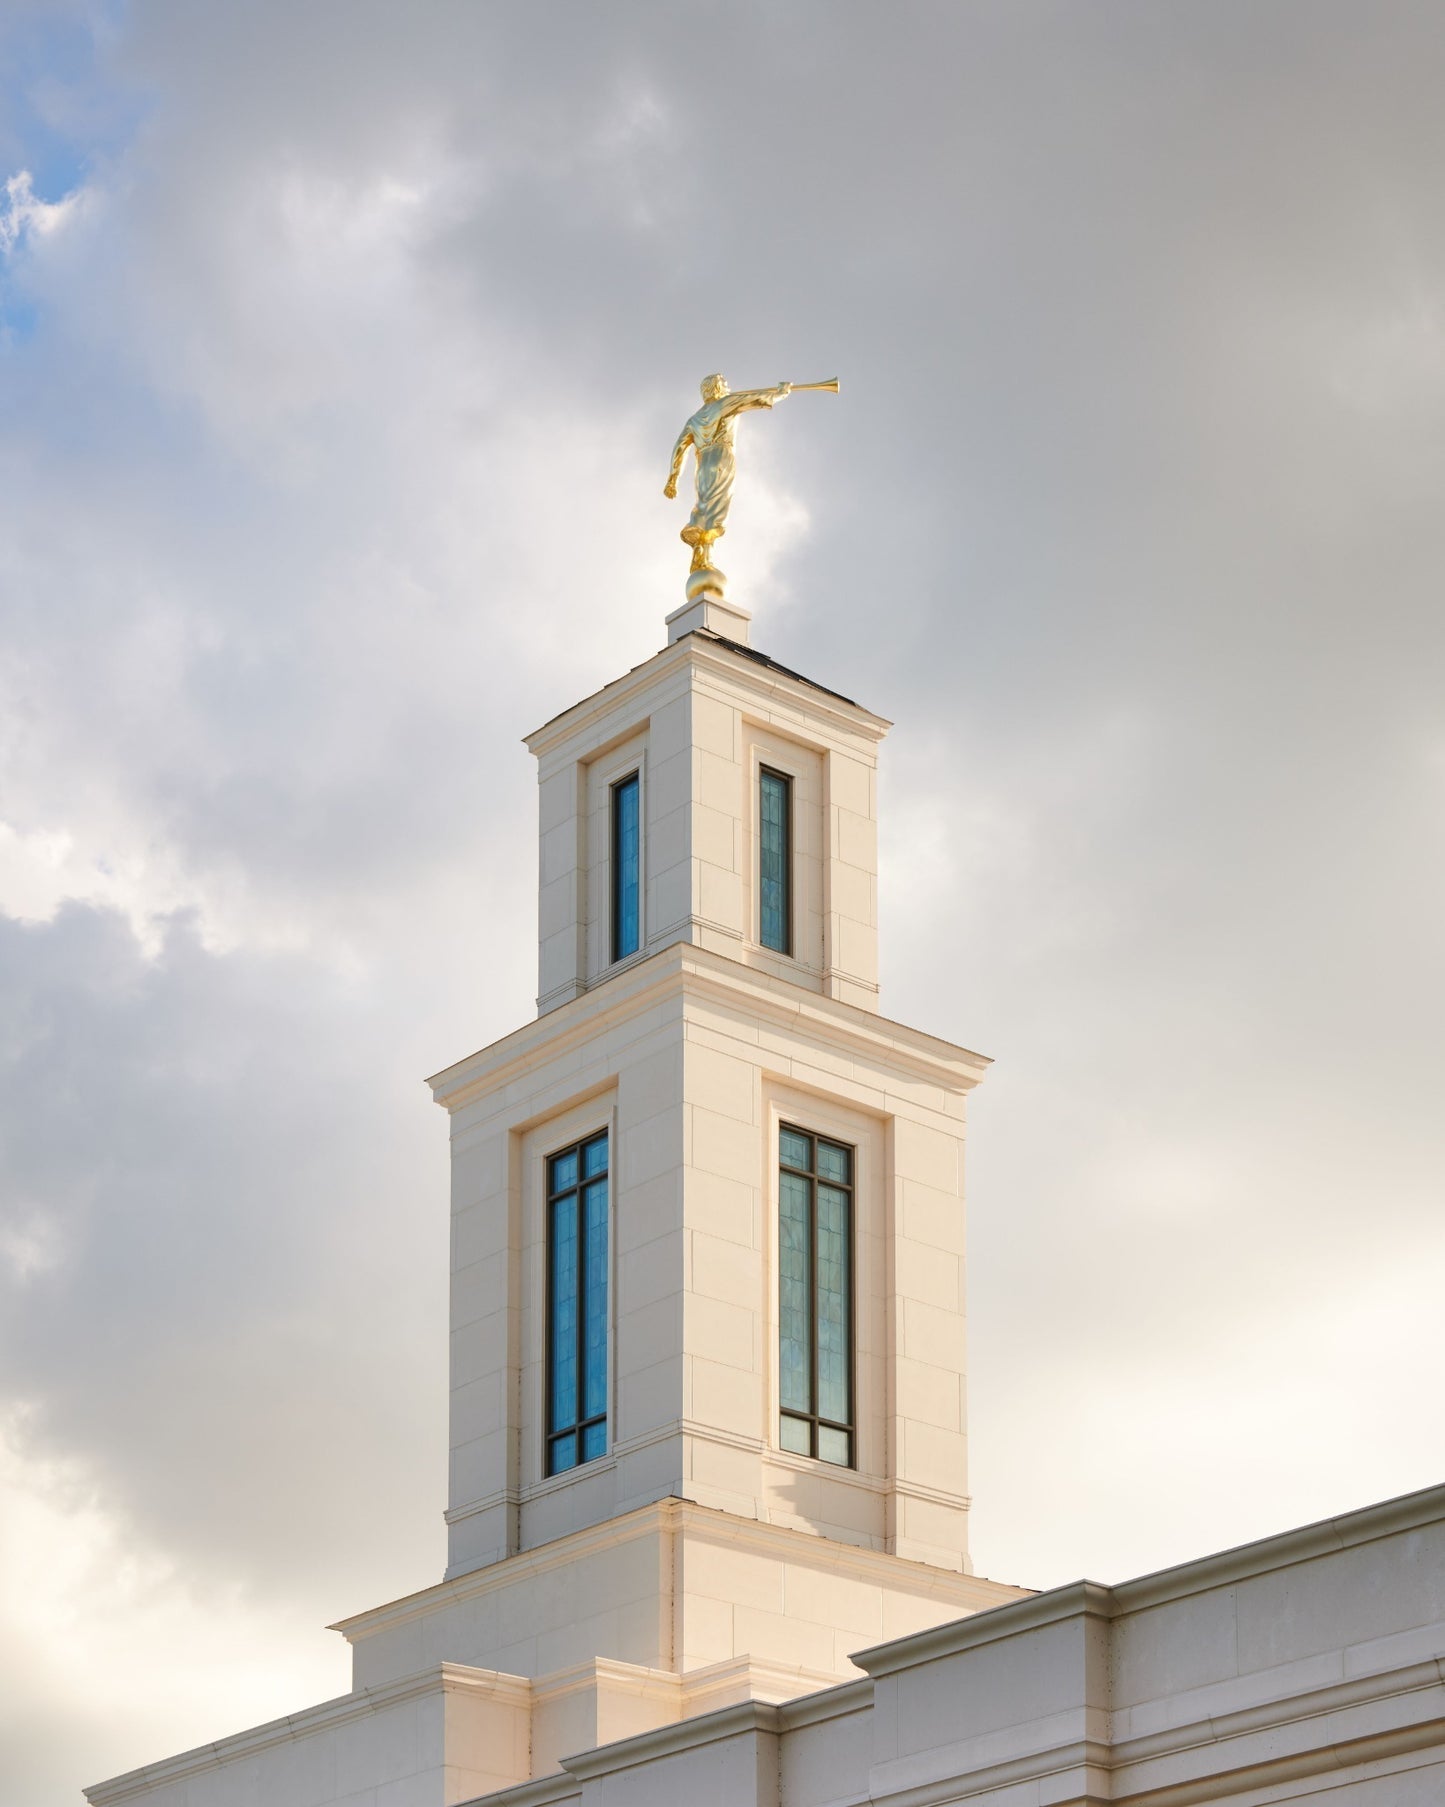 Baton Rouge Louisiana Temple